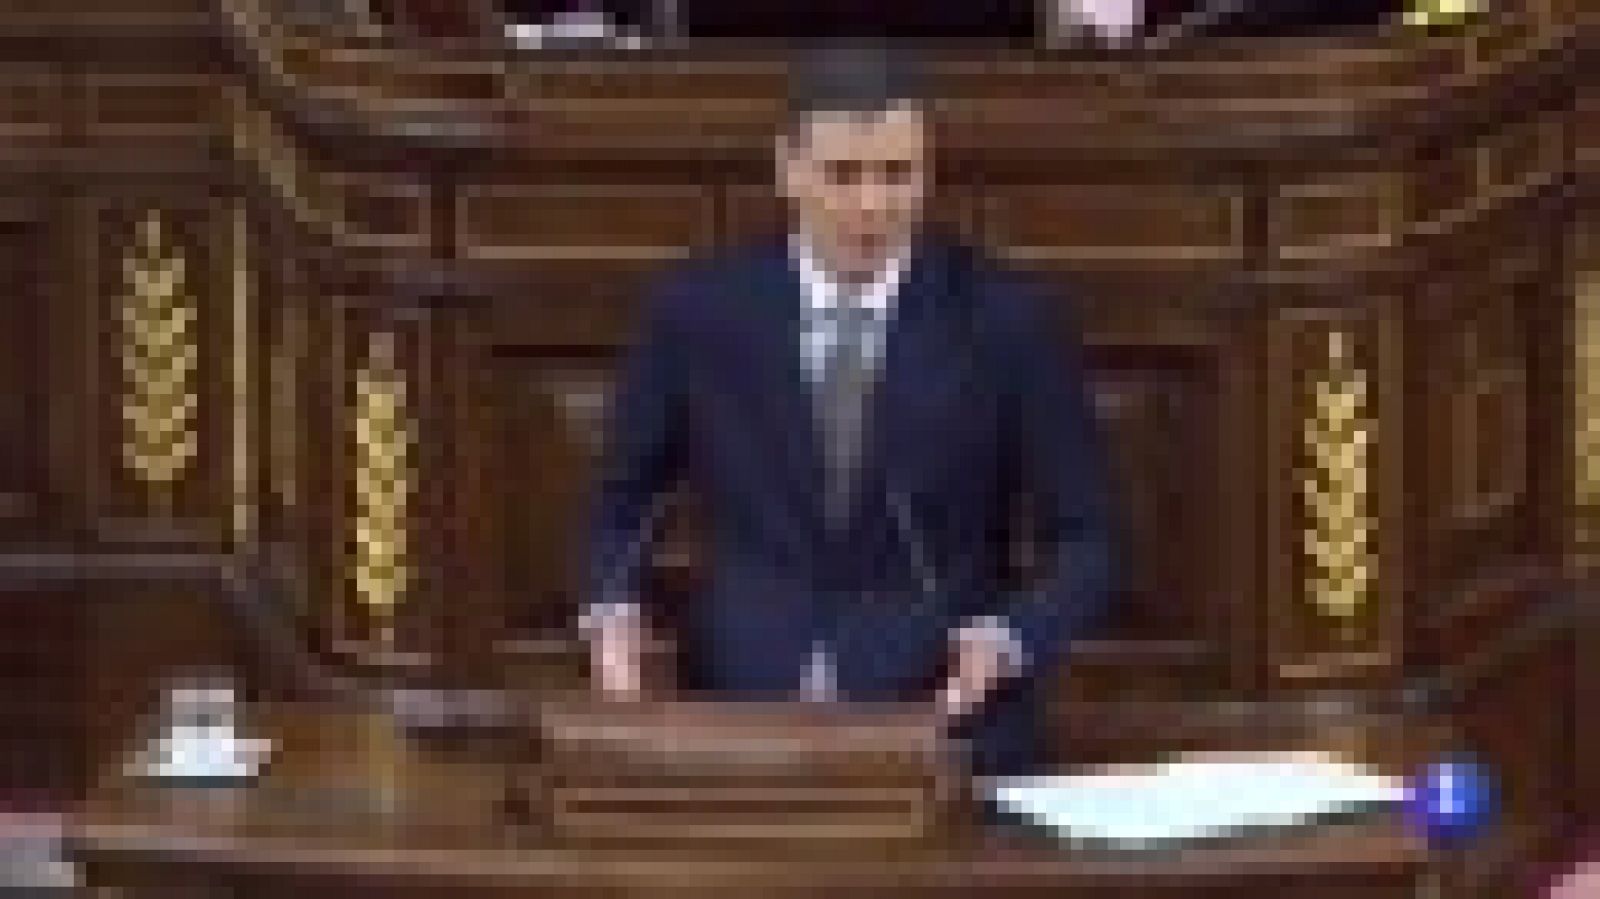 Moción de censura a Rajoy: Los rifirrafes entre Rajoy y Sánchez